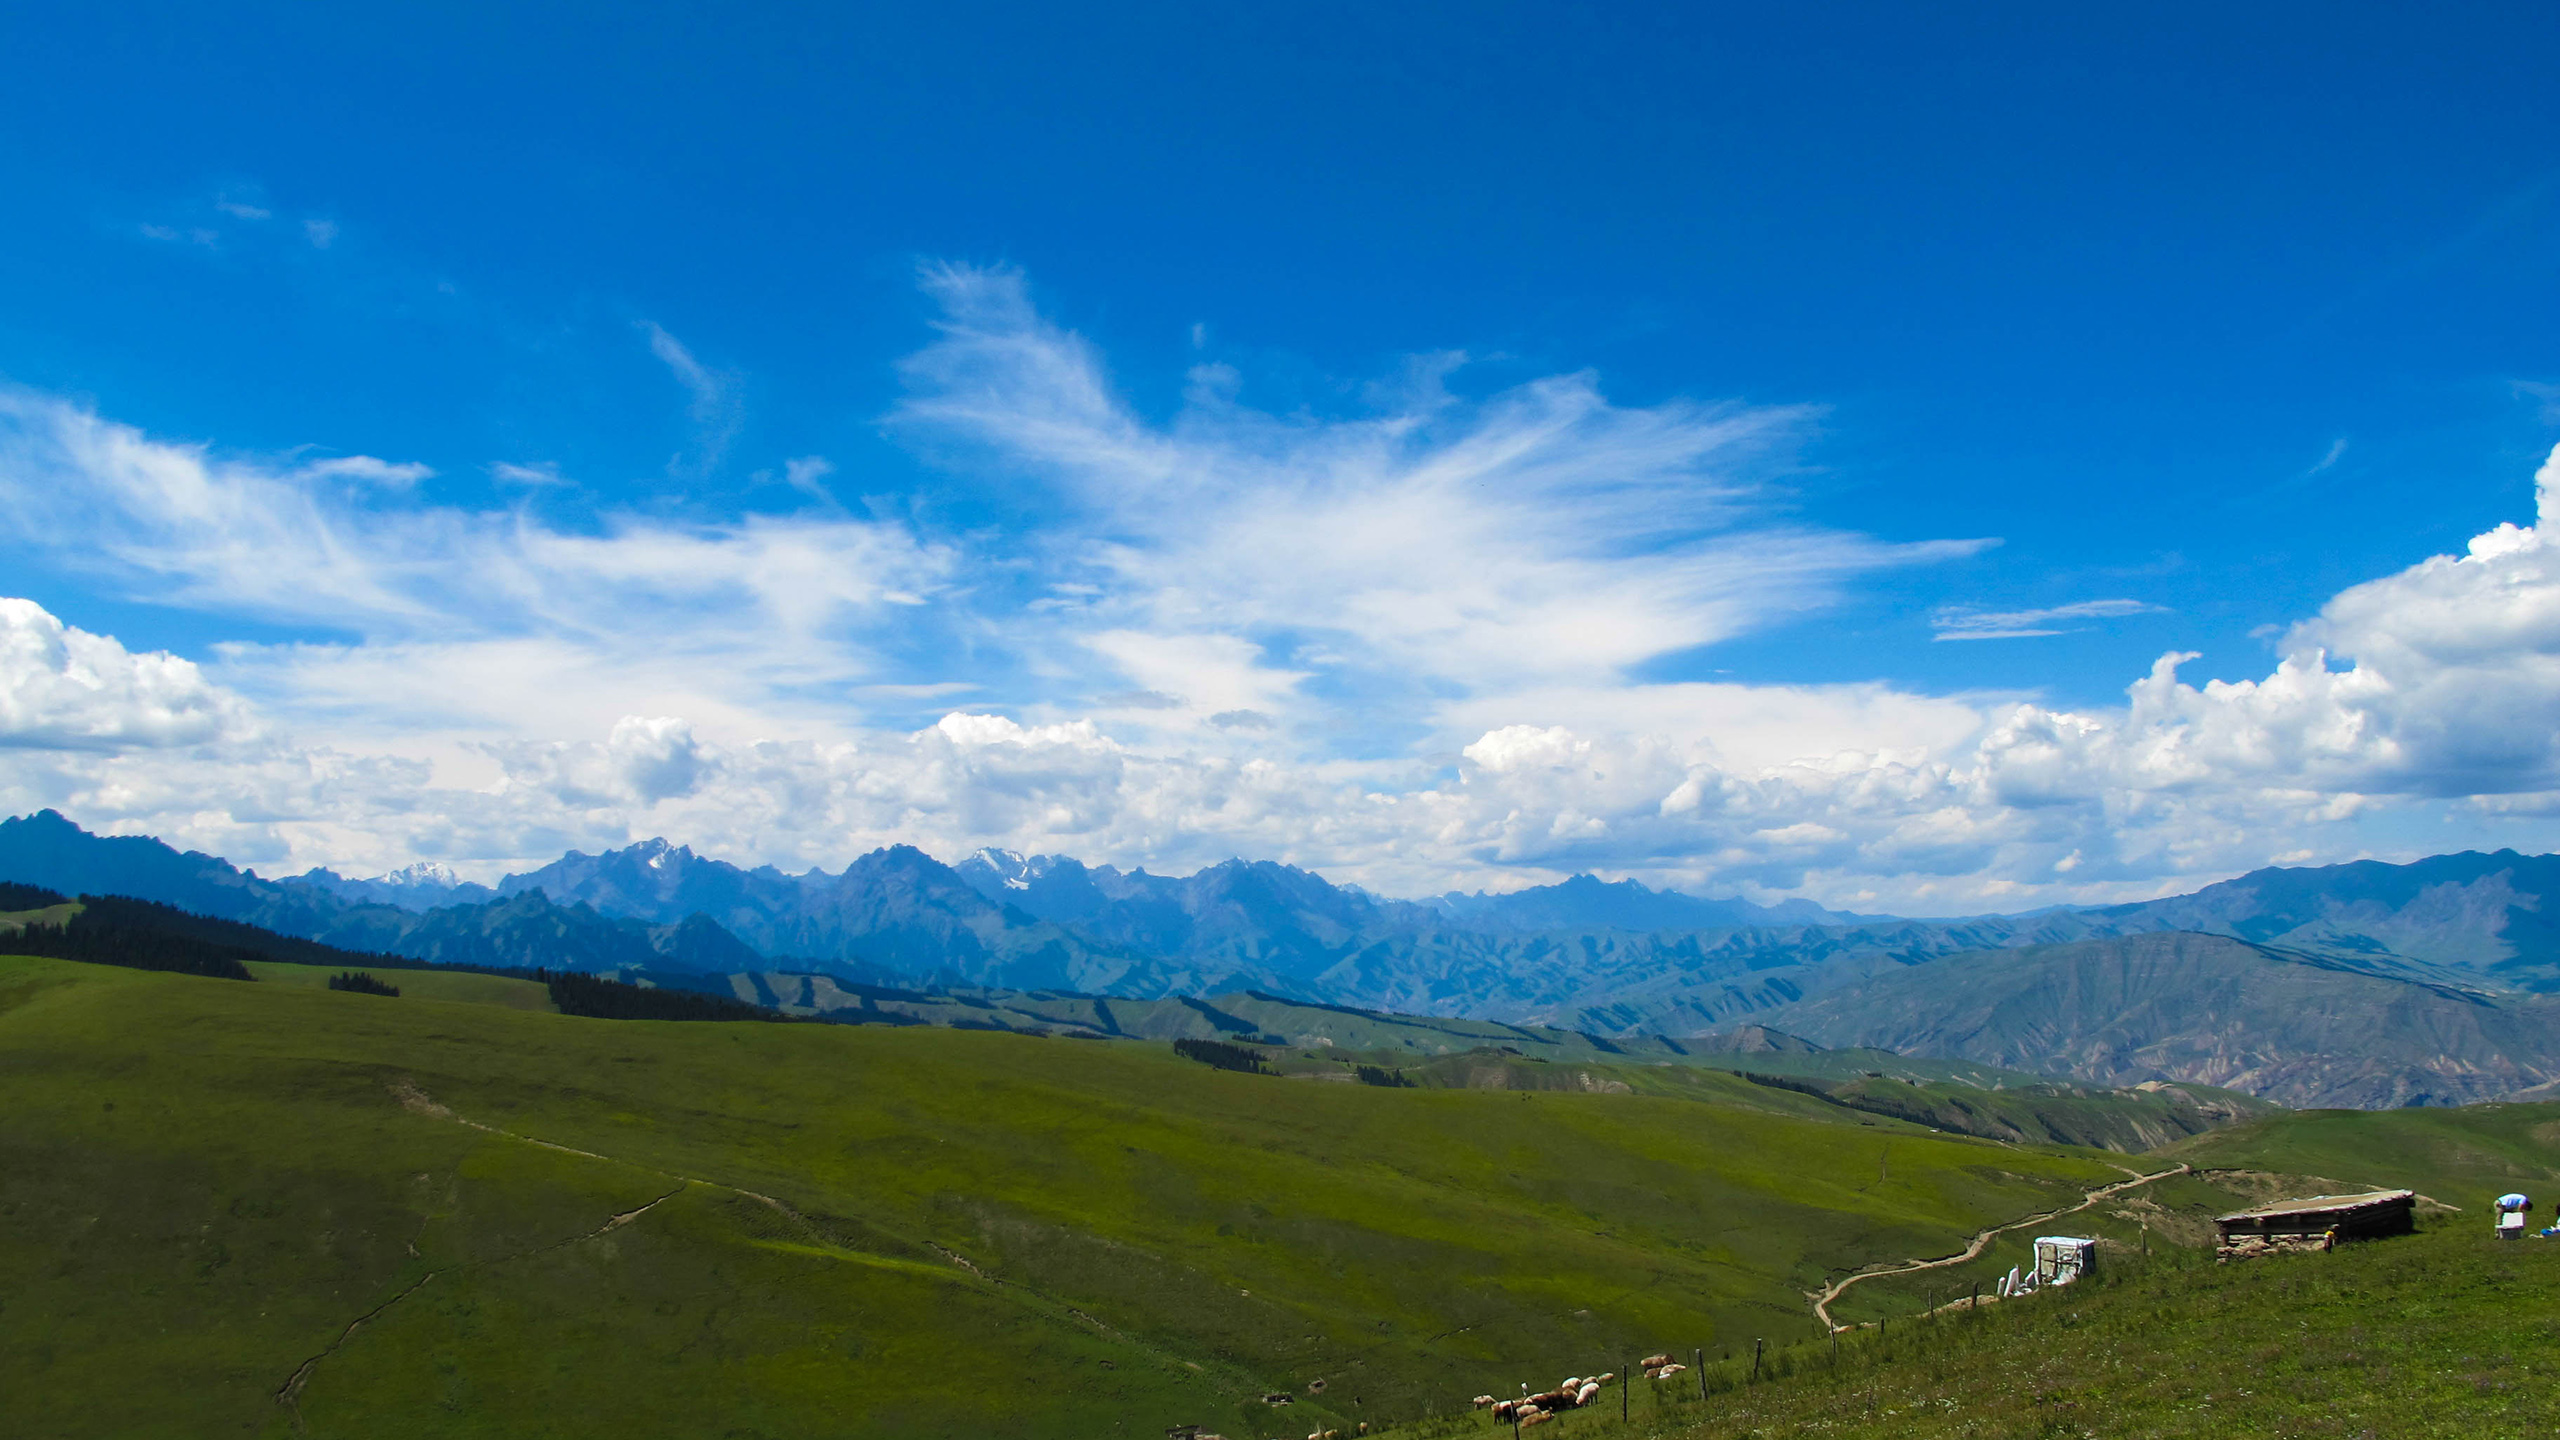 草原风景图片高清大图 新疆索尔巴斯陶风景图片(4)